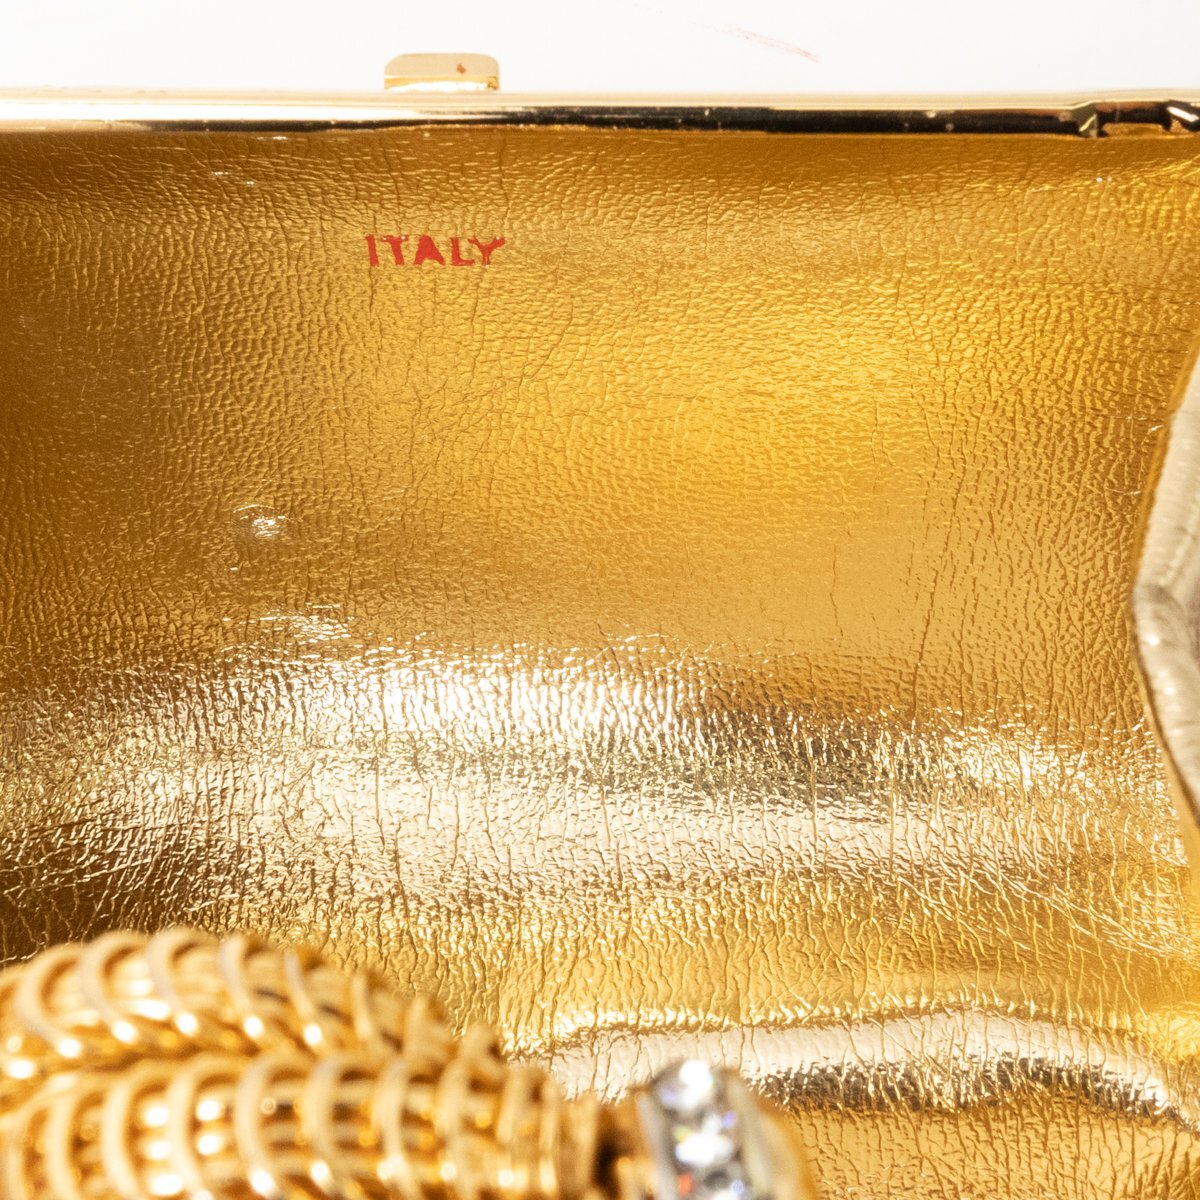 【1円スタート】RODO ロド イタリア製 チェーン ミニショルダーバック 婦人鞄 パーティバッグ ゴールド メタル ゴールド金具 ストーンの画像10